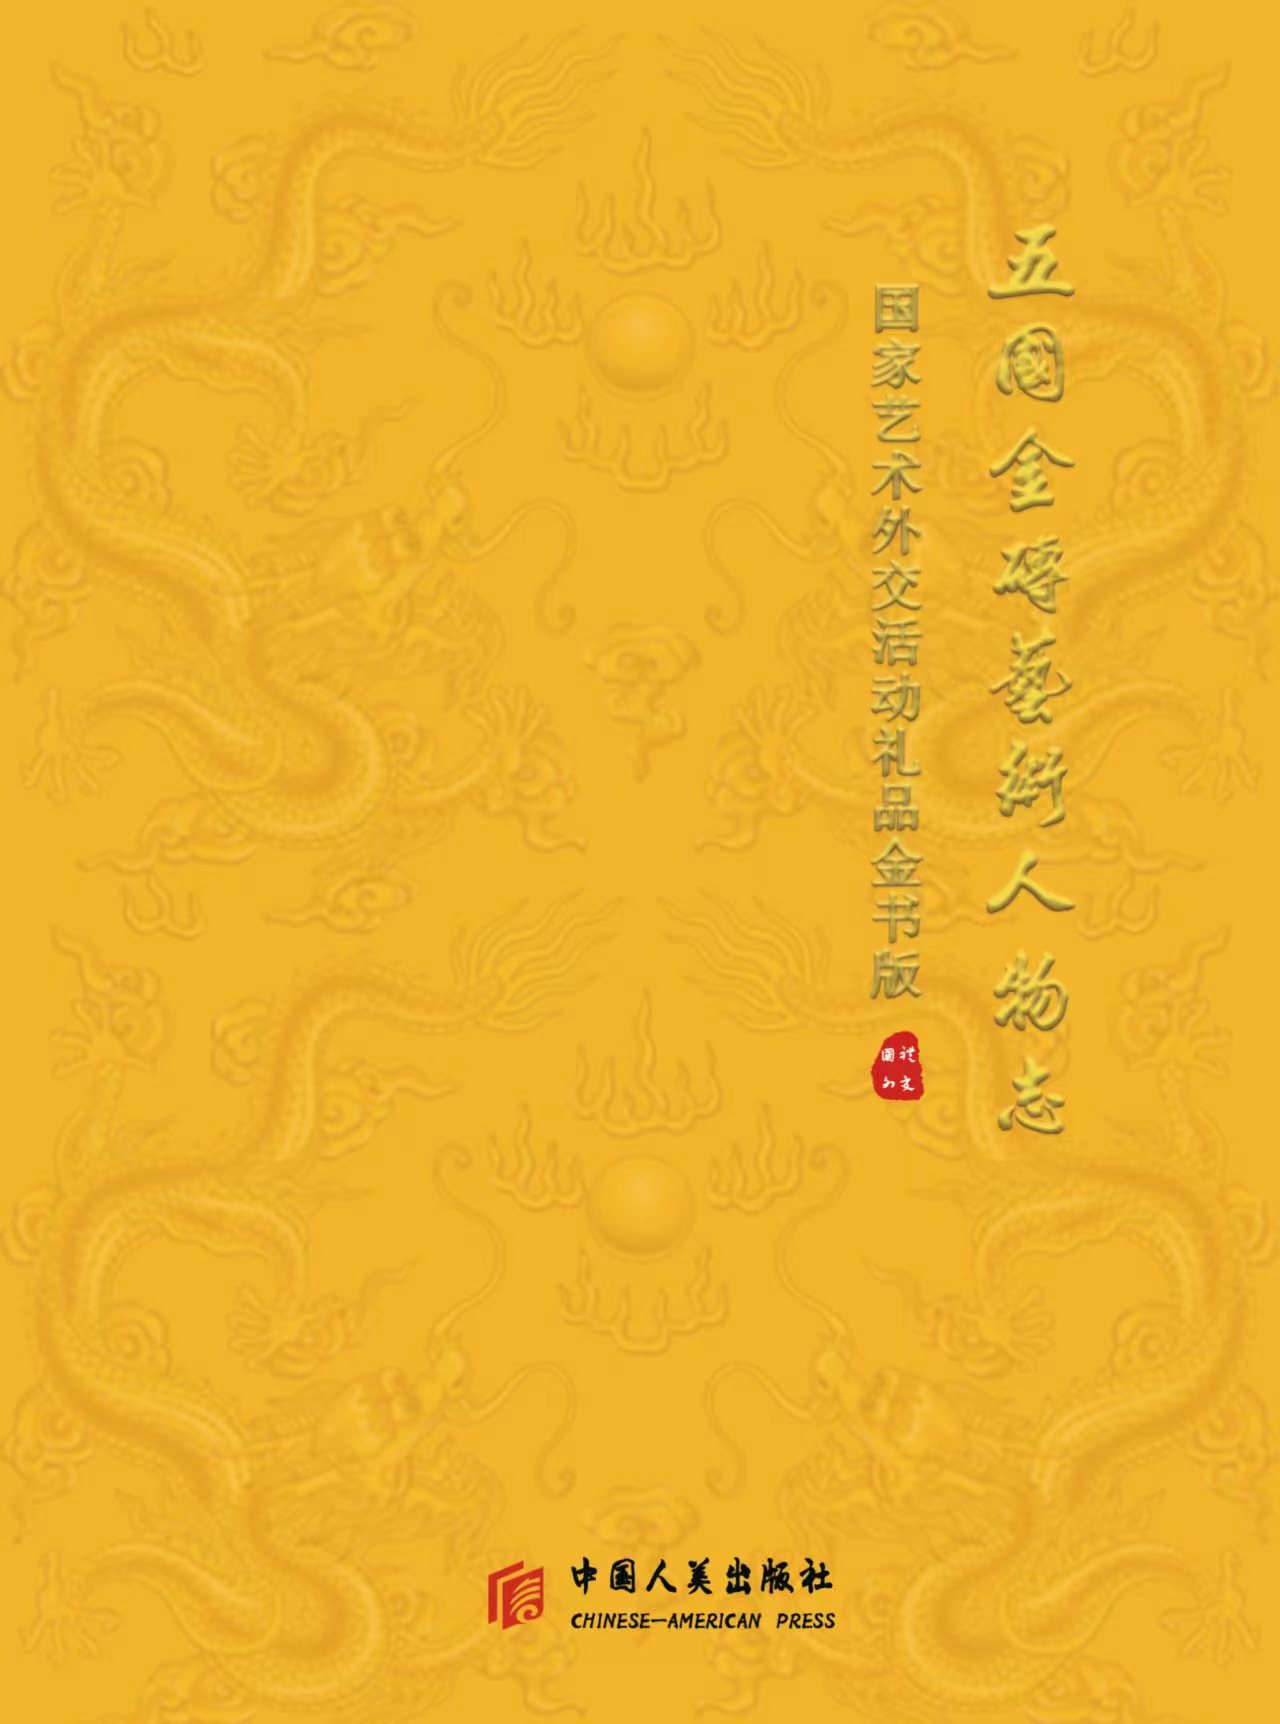 张亚雄雕刻十二生肖和金蟾纳福作品出版发行《五国金砖艺术人物志》